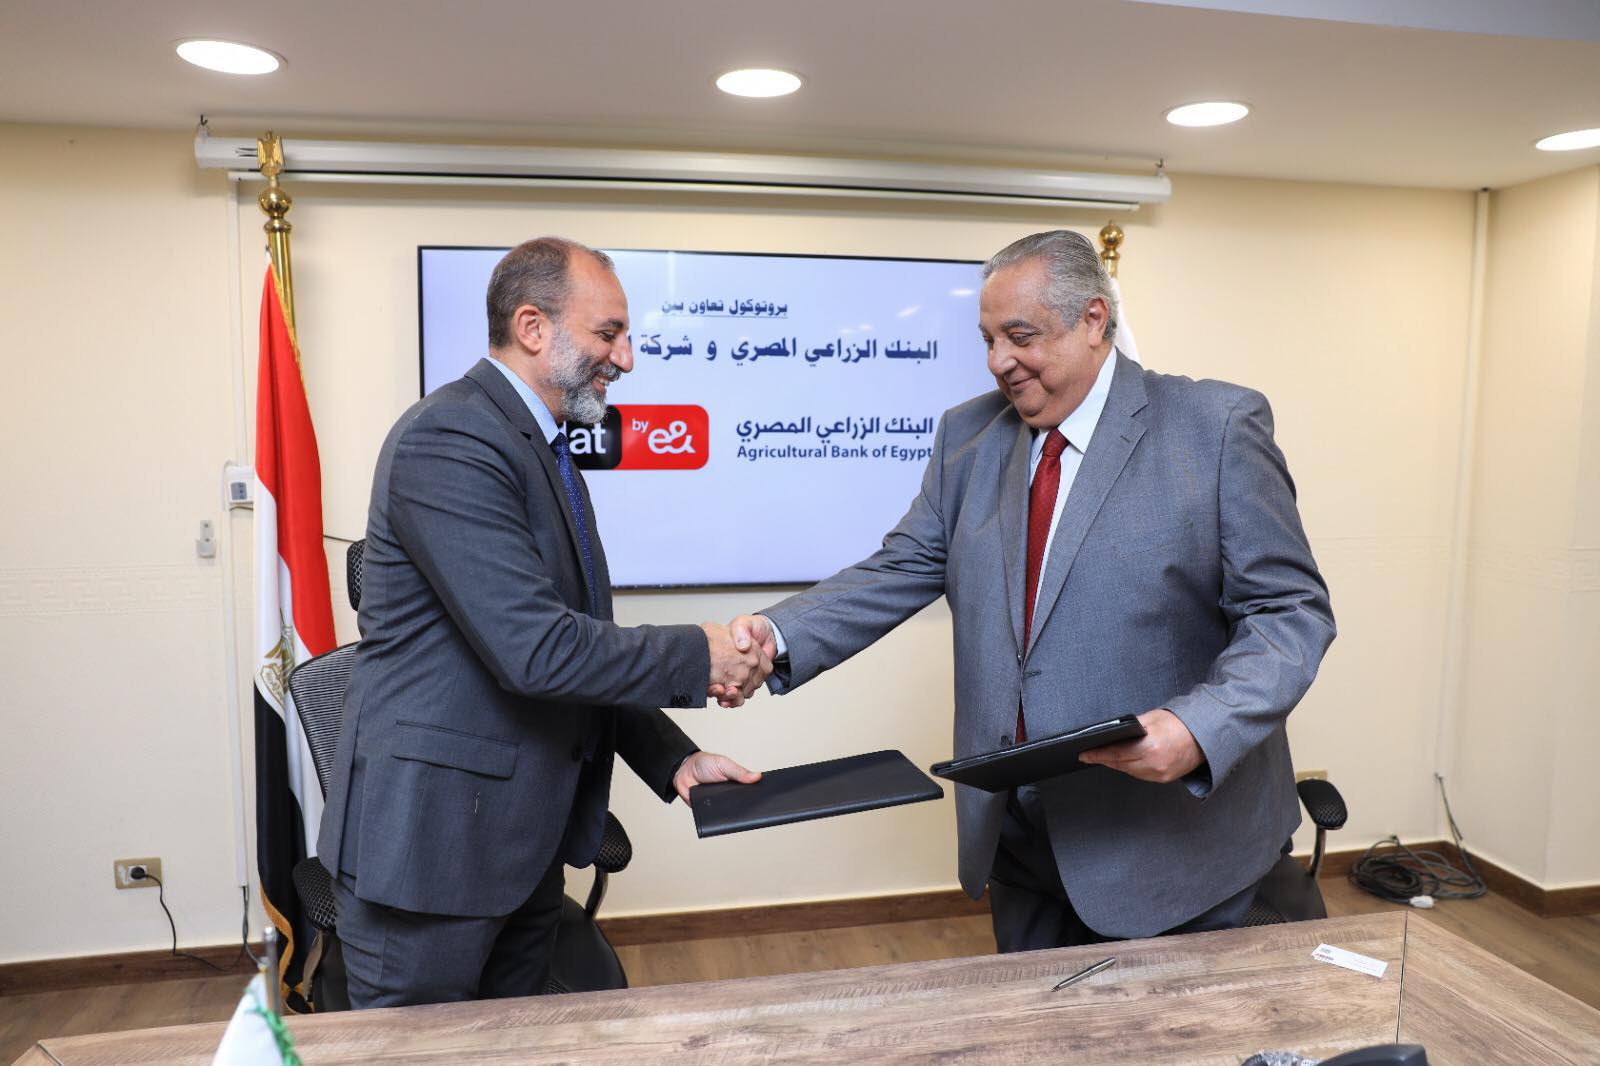 البنك الزراعي المصري يتعاون مع اتصالات مصر لتوفير تغطية شبكة المحمول لسكان الريف